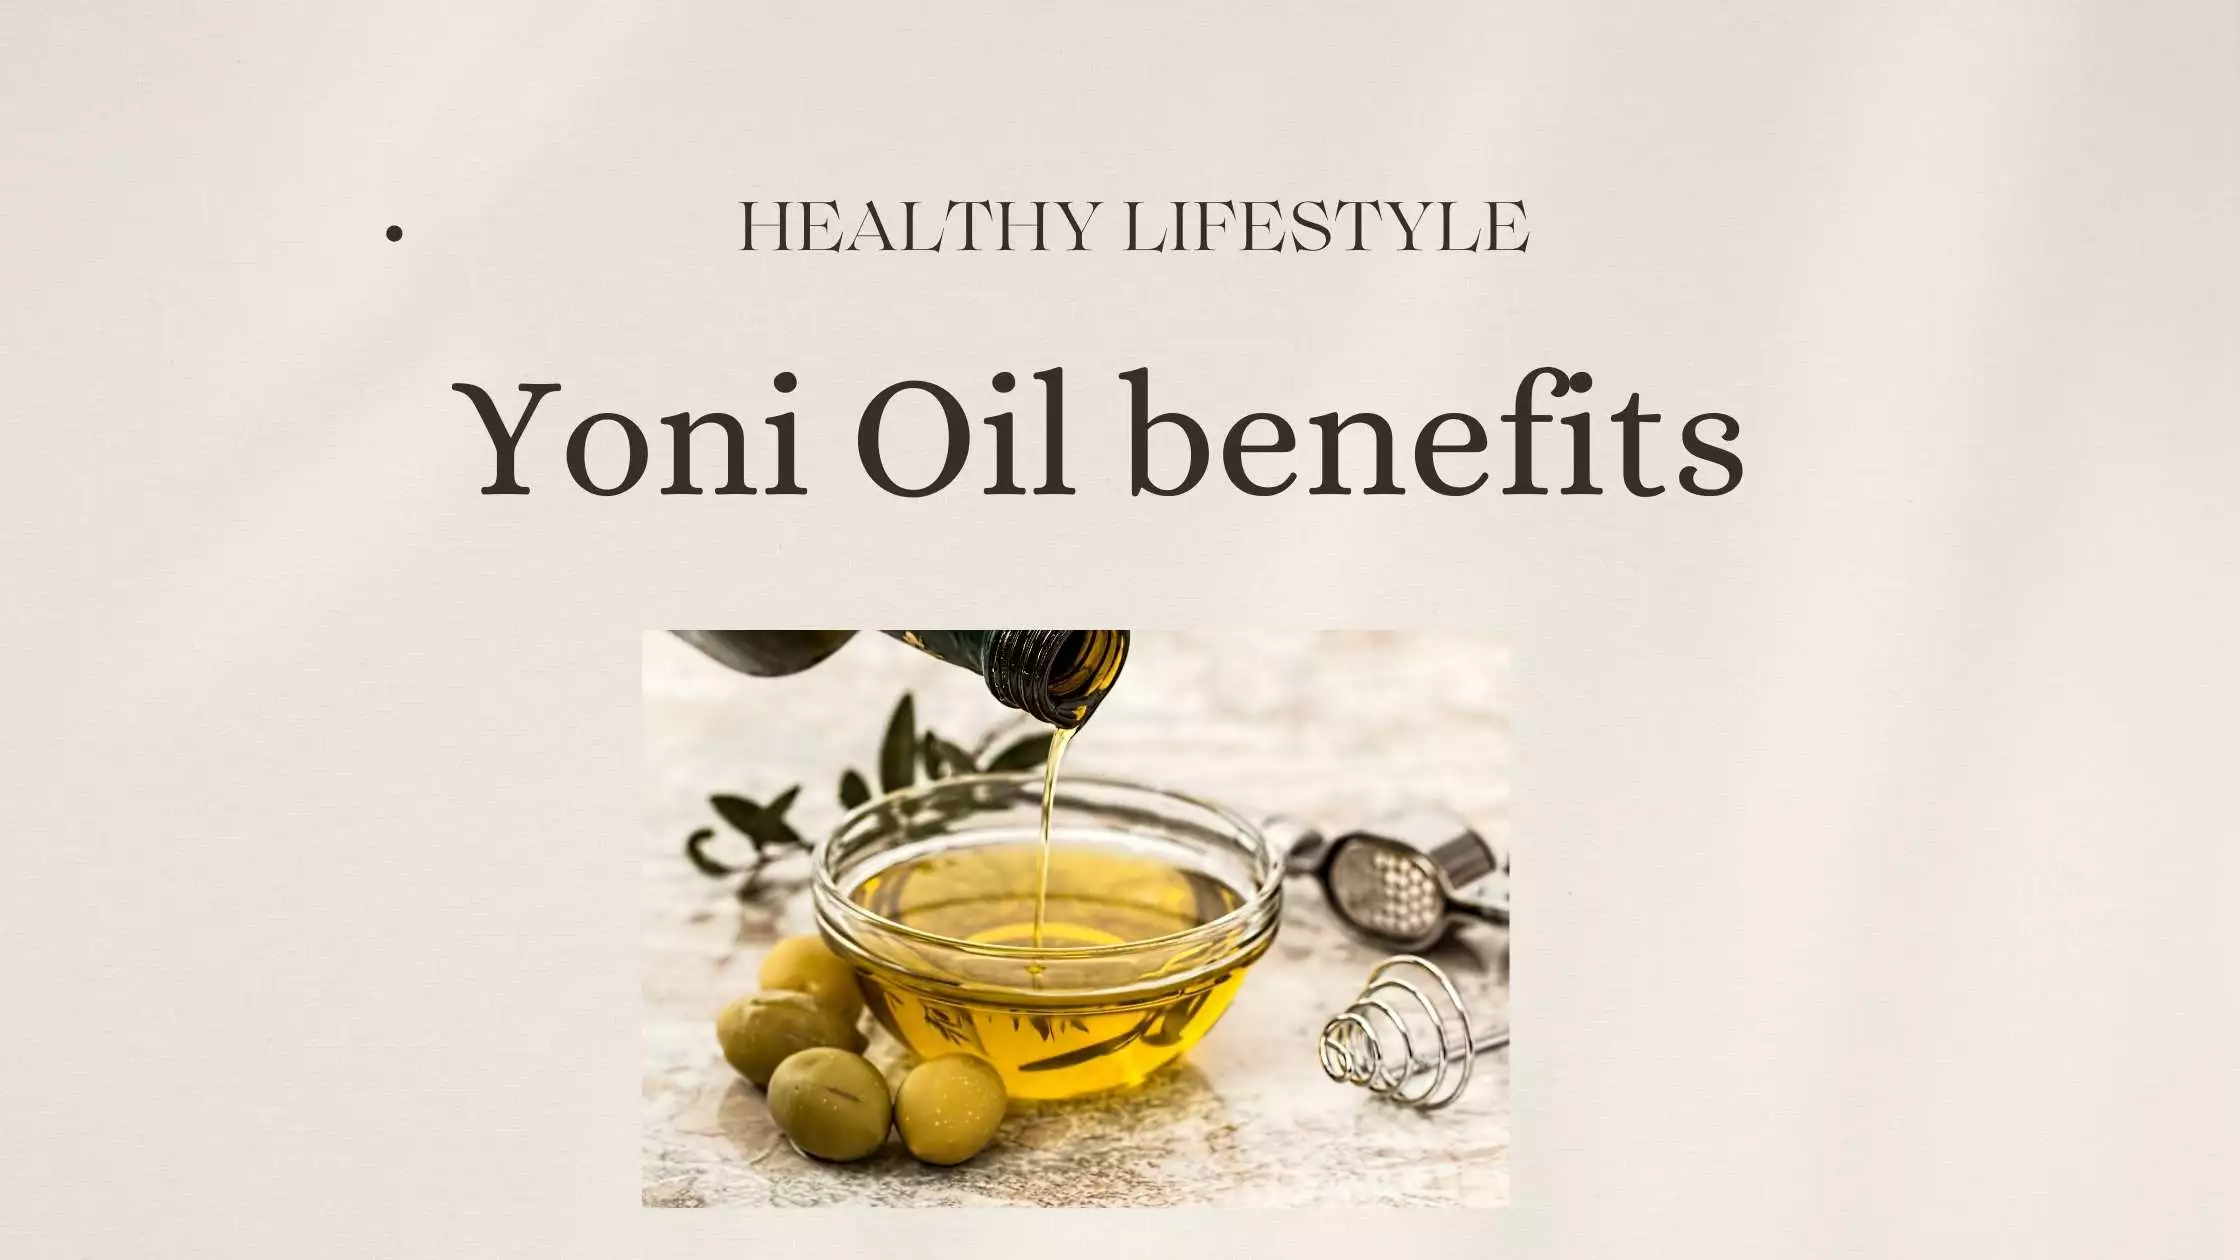 Yoni Oil benefits